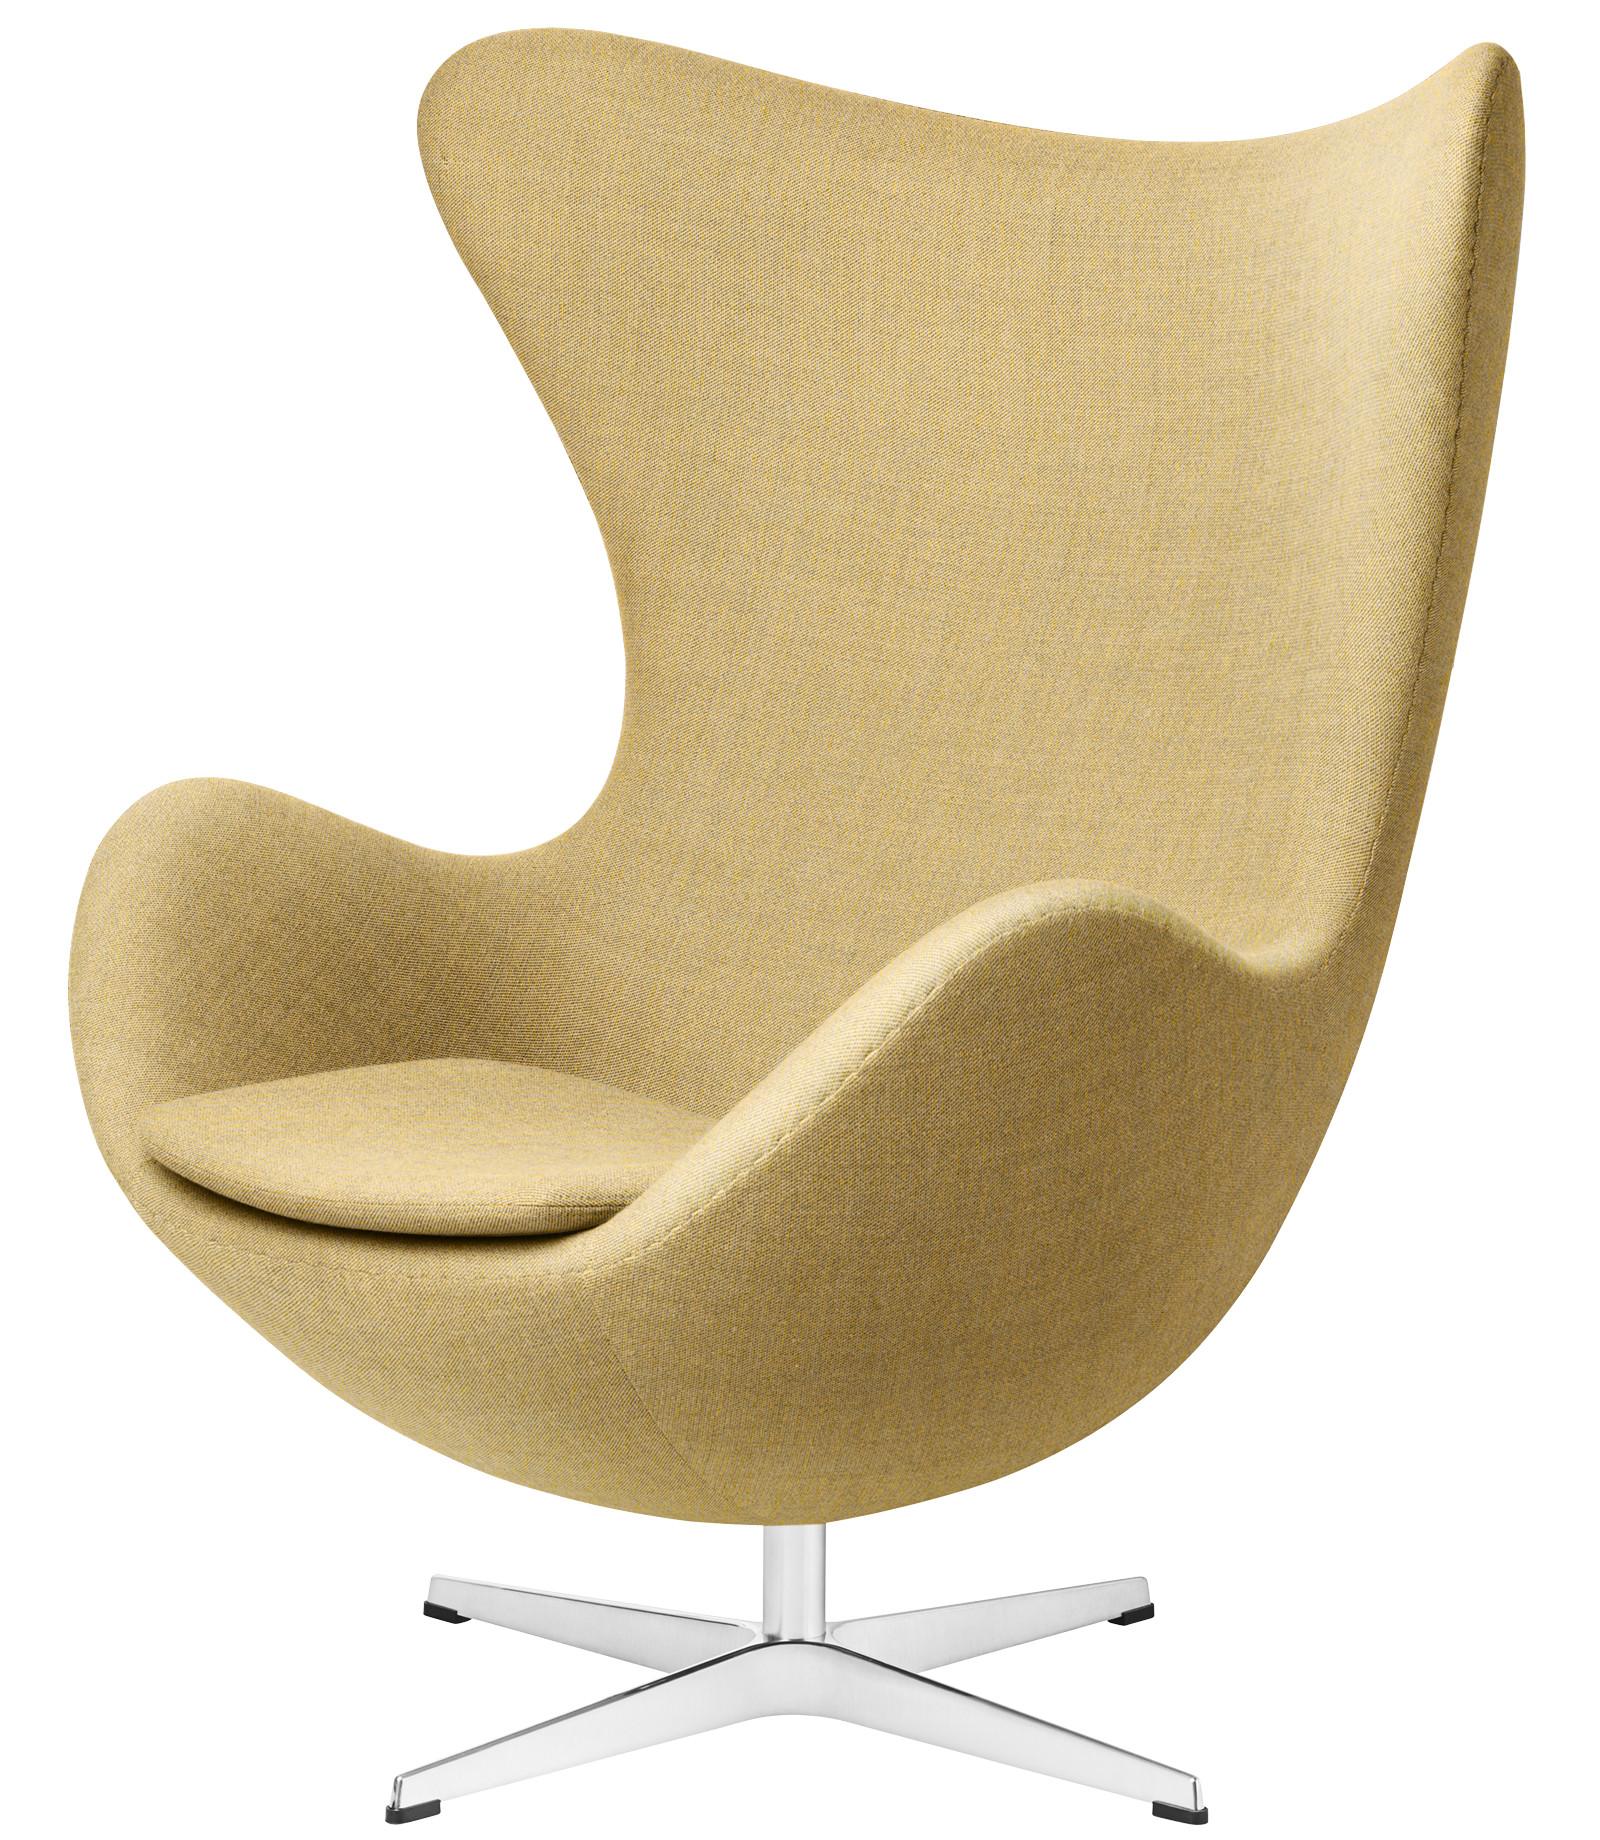 Arne Jacobsen 'Egg' Chair for Fritz Hansen in Christianshavn Fabric Upholstery For Sale 4